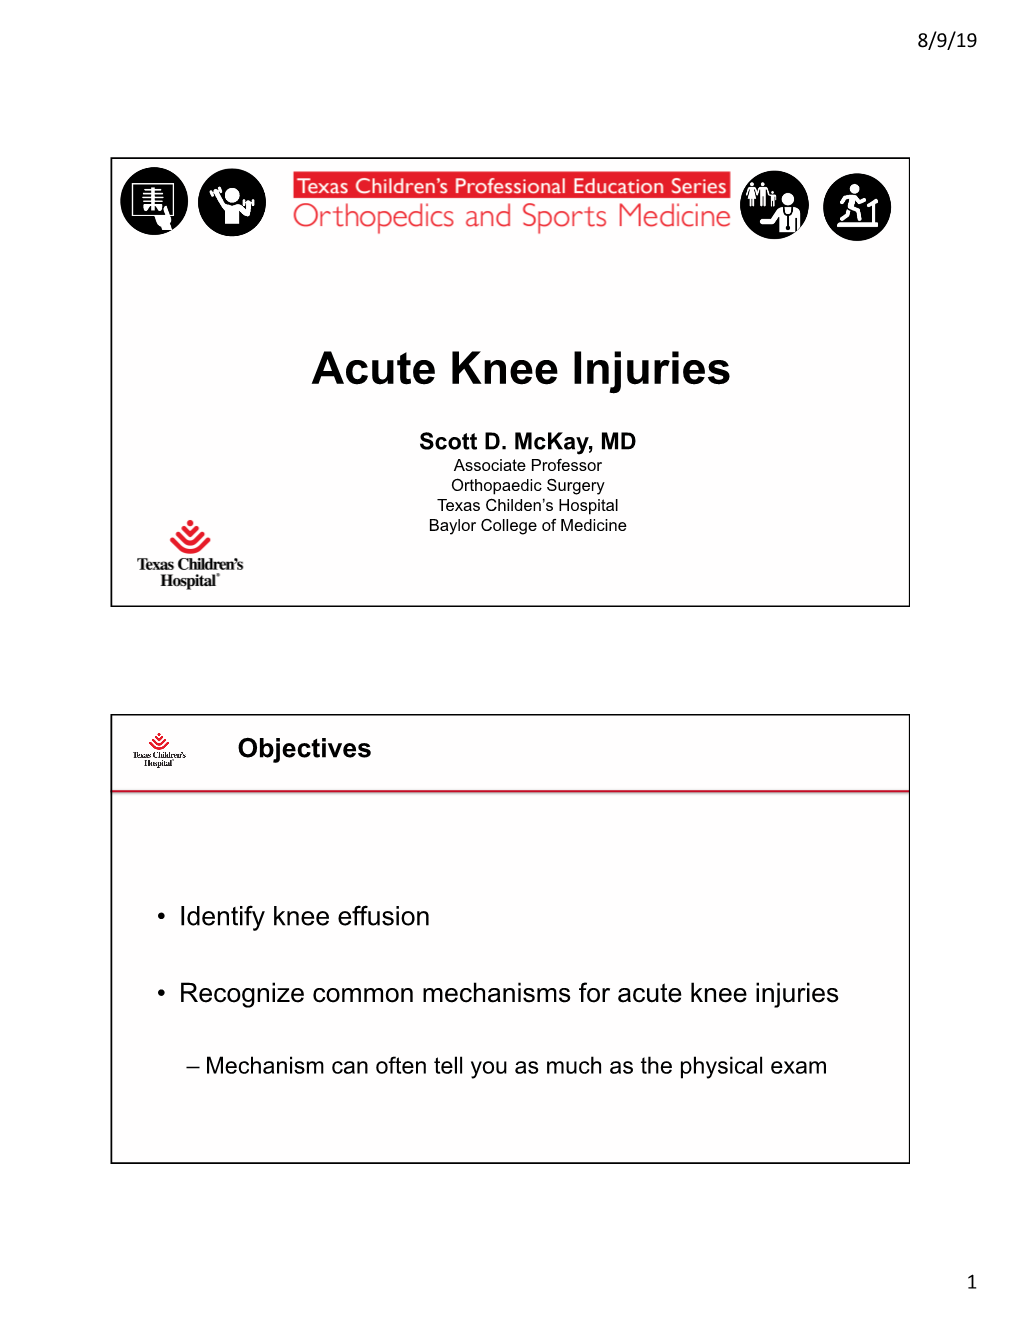 Acute Knee Injuries